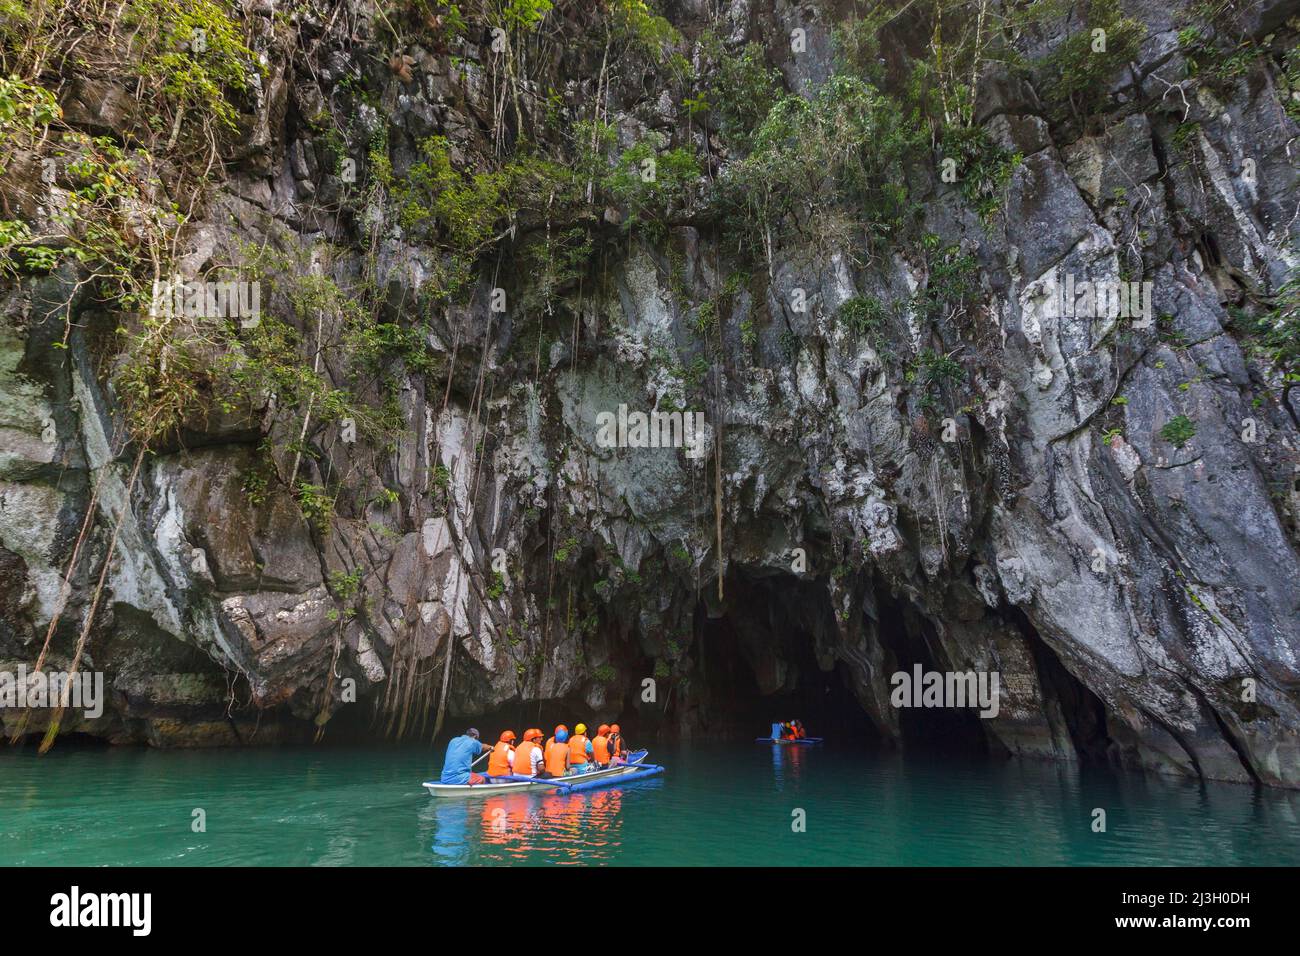 Philippines, Palawan, Puerto Princesa parc national de la rivière souterraine, canoë-outrigger amarré sur la plage de sable où les touristes débarquent pour visiter les grottes Banque D'Images